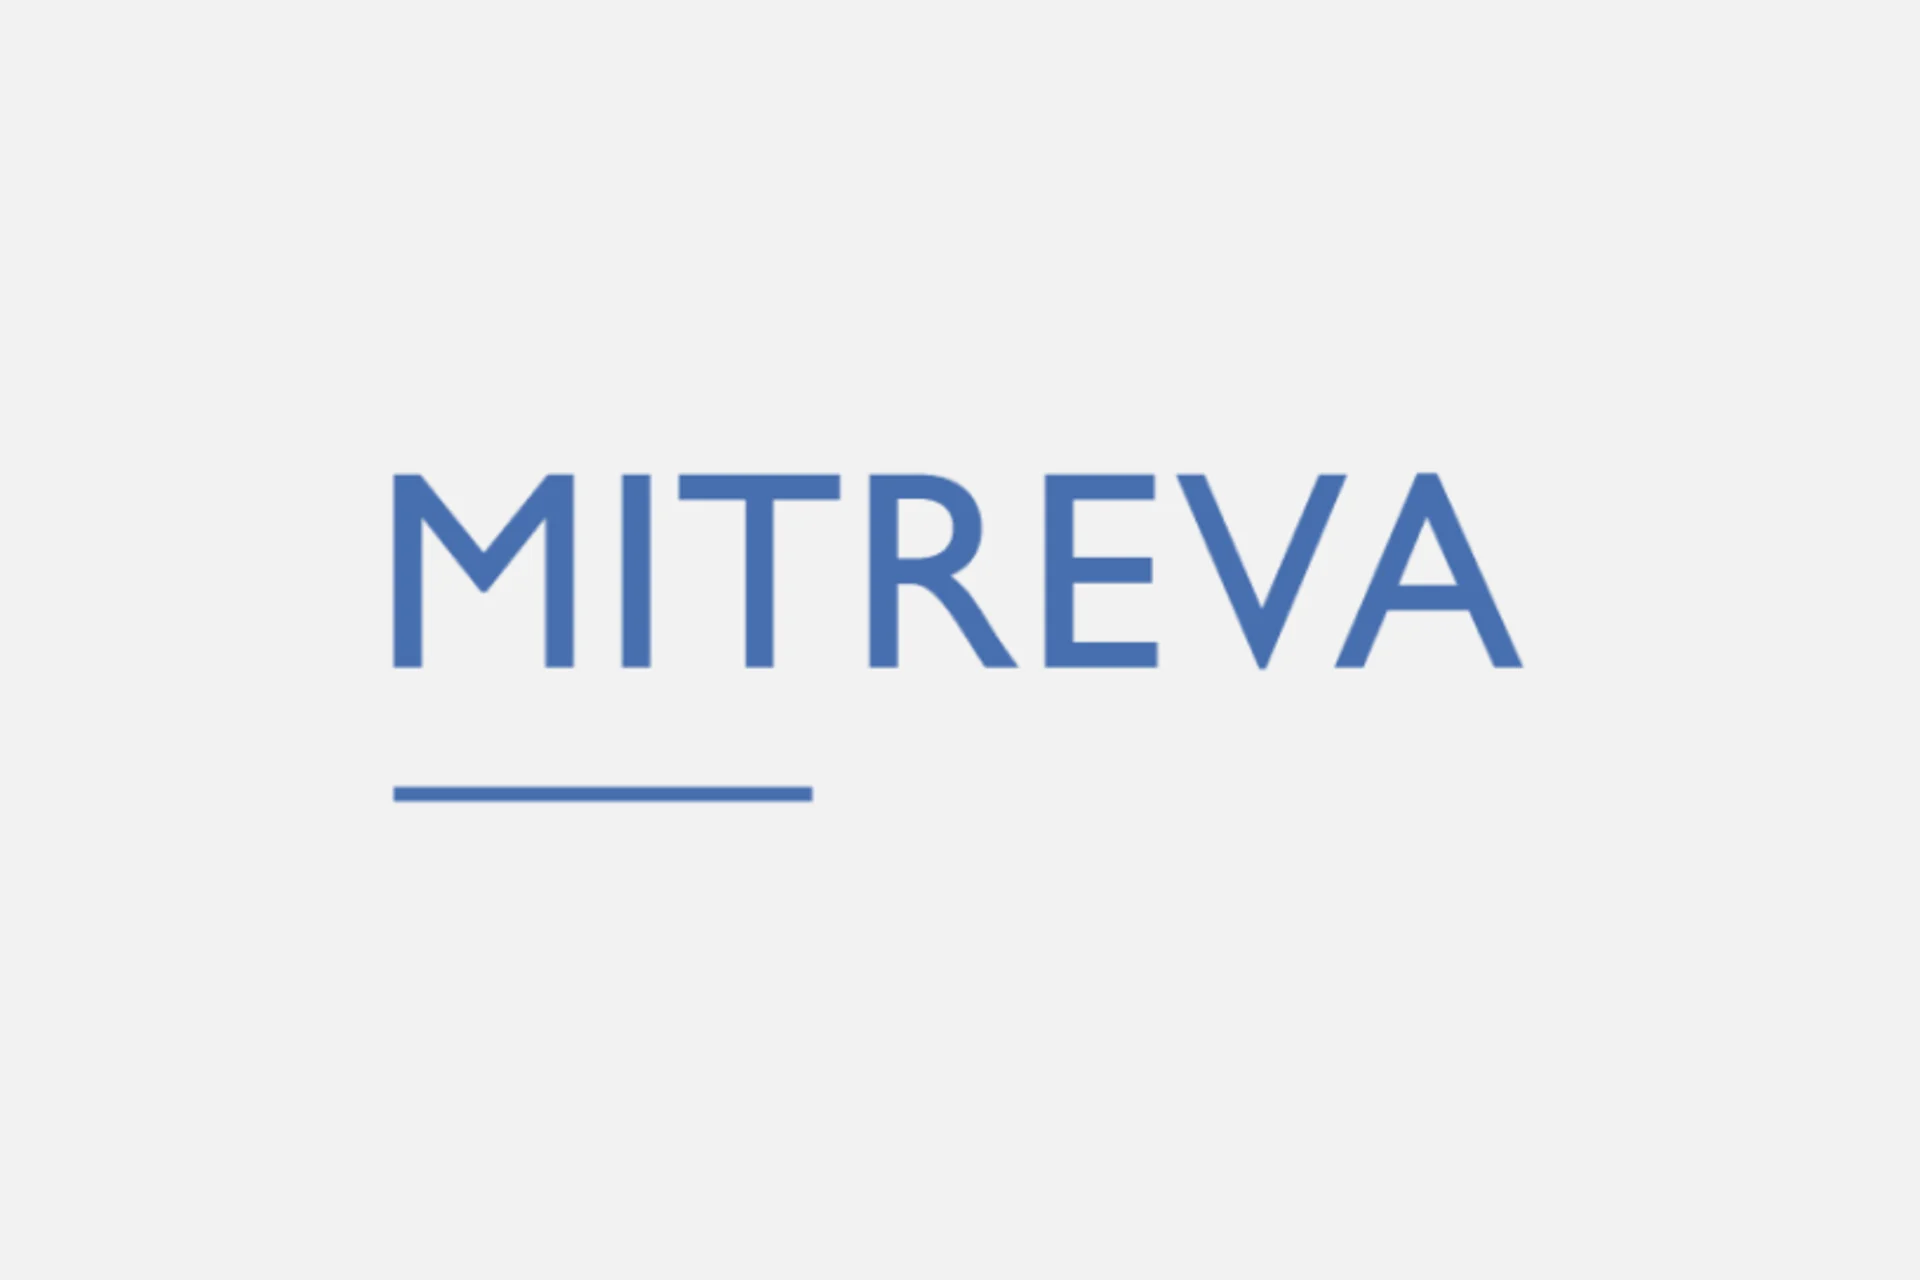 Mitreva logo